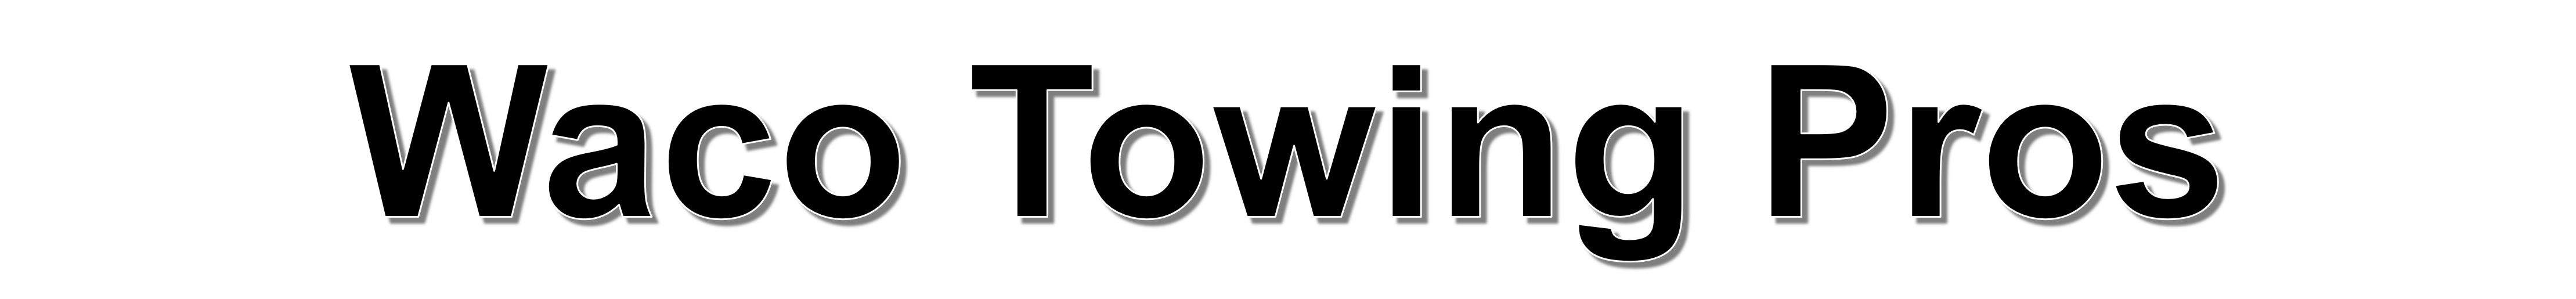 Waco Towing Pros logo